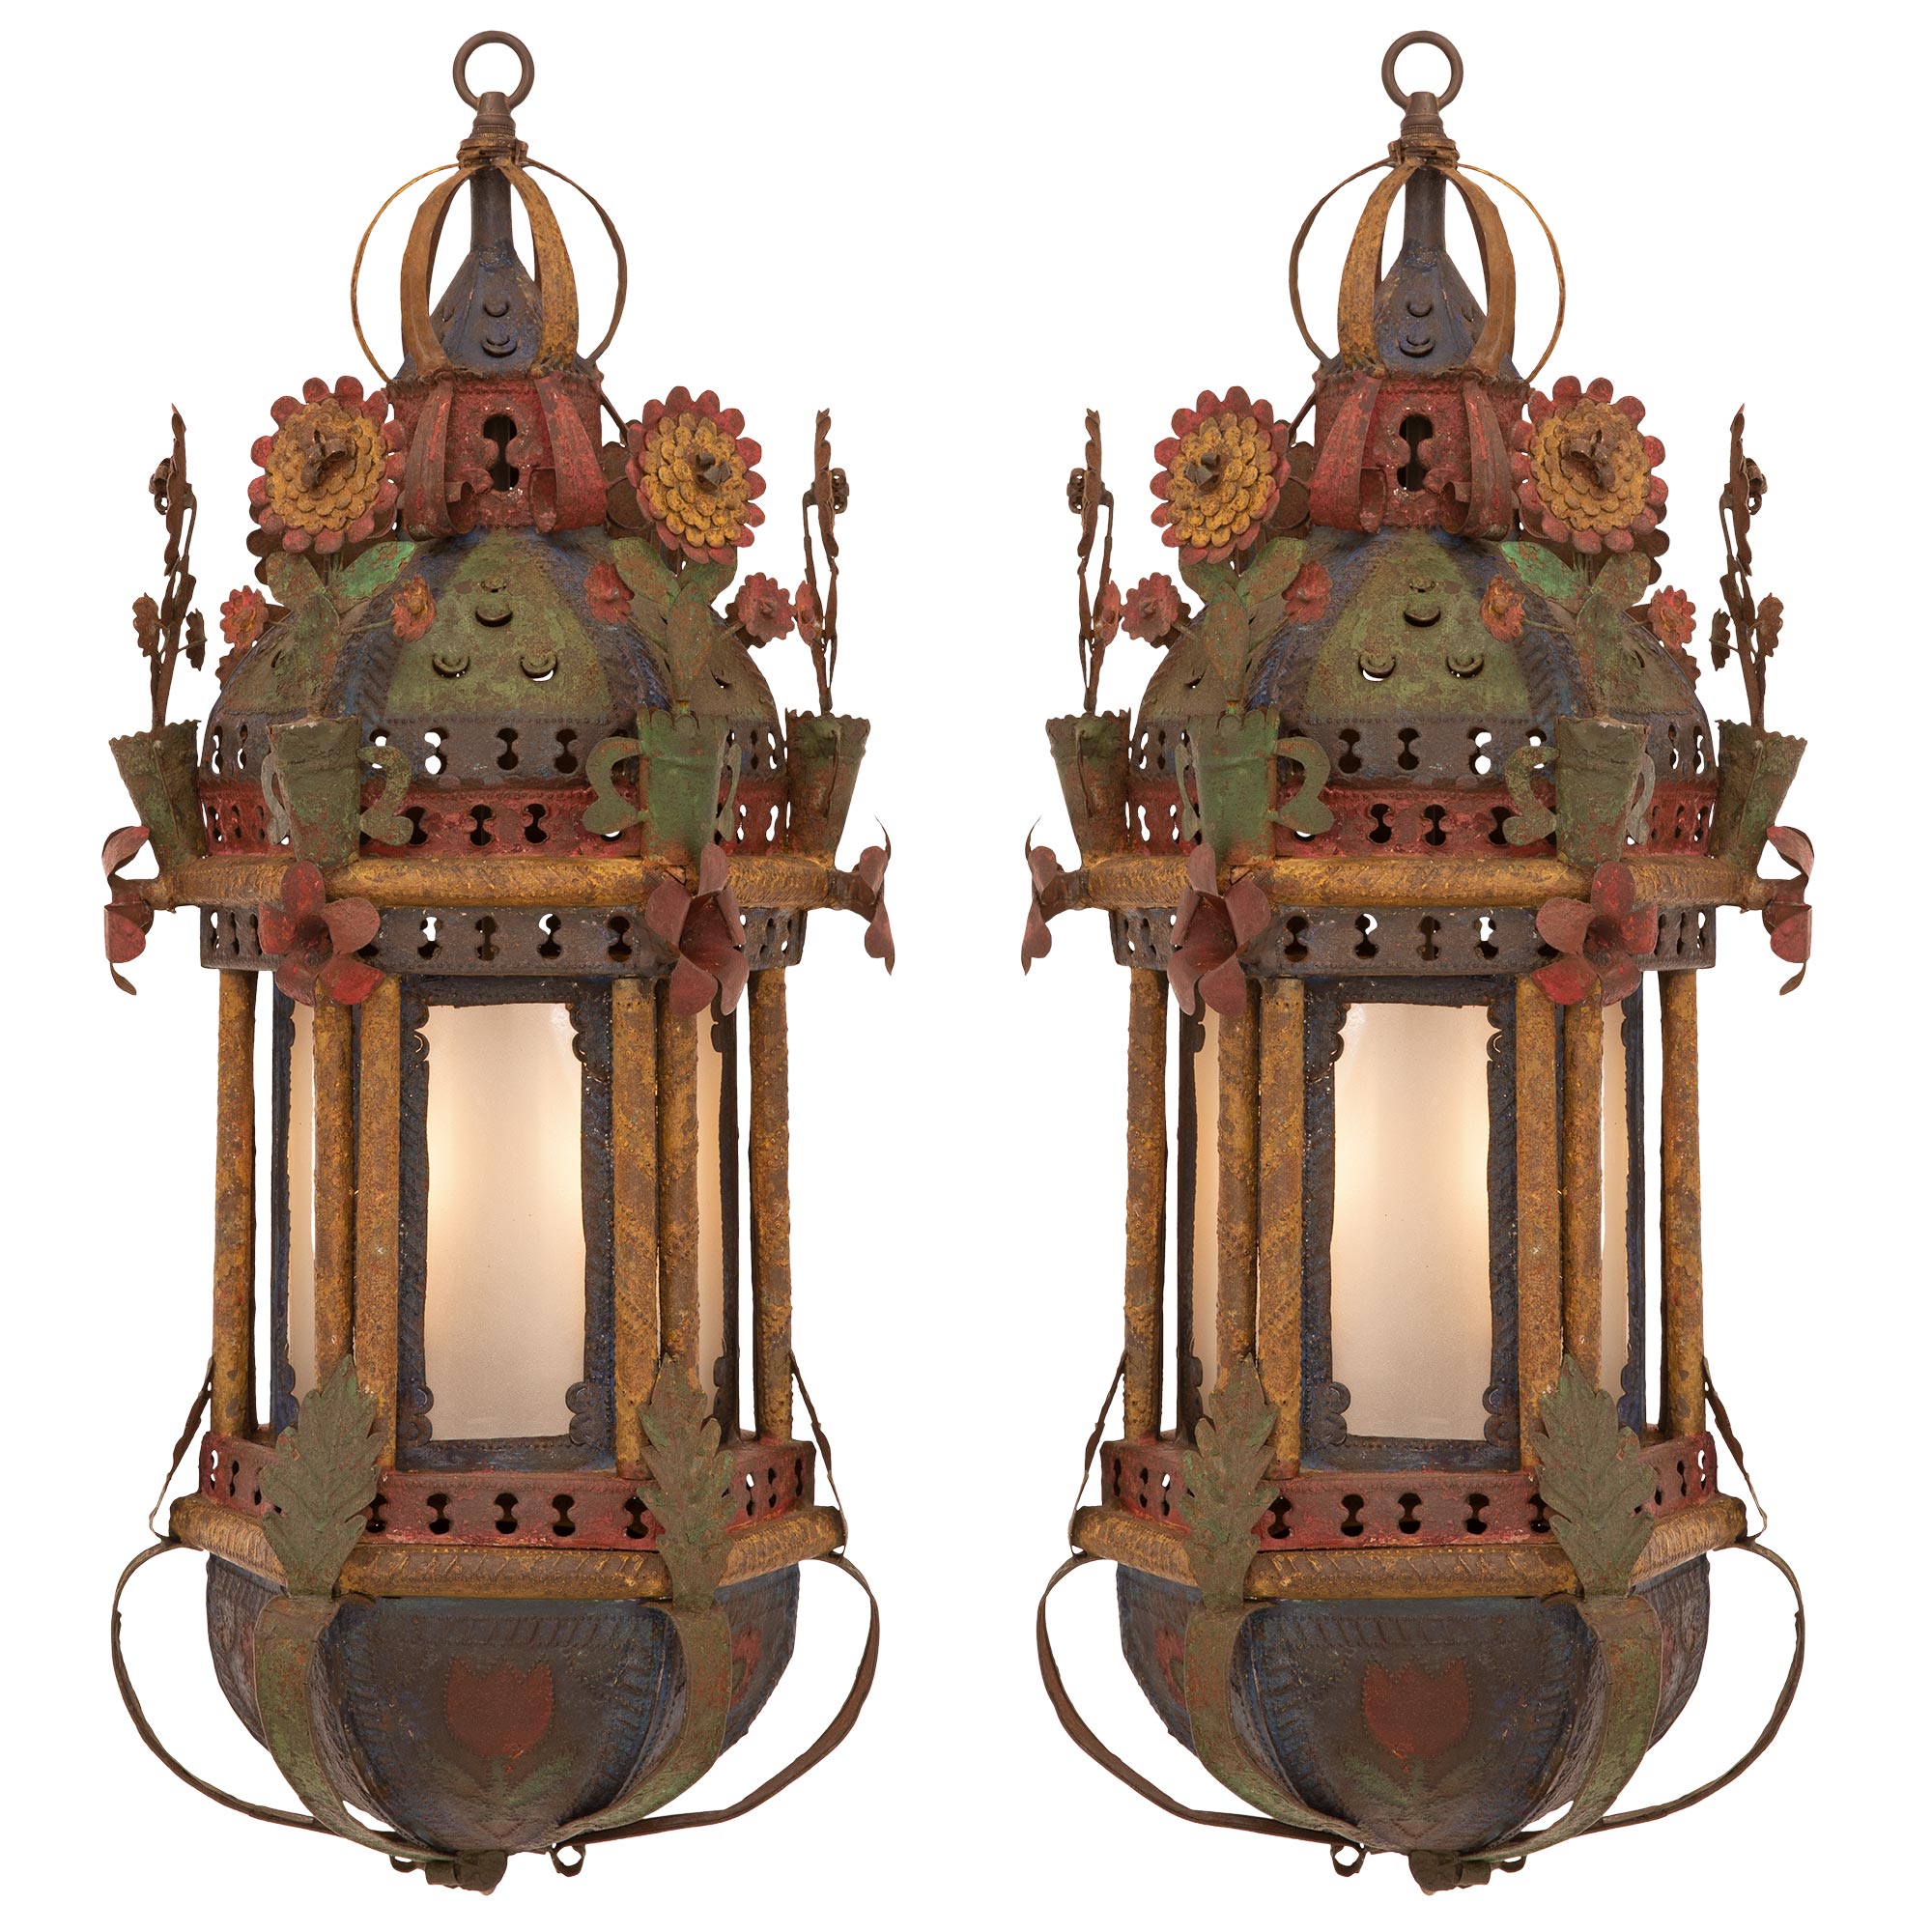 Paire de lanternes vénitiennes italiennes du 18ème siècle en métal patiné et tôle